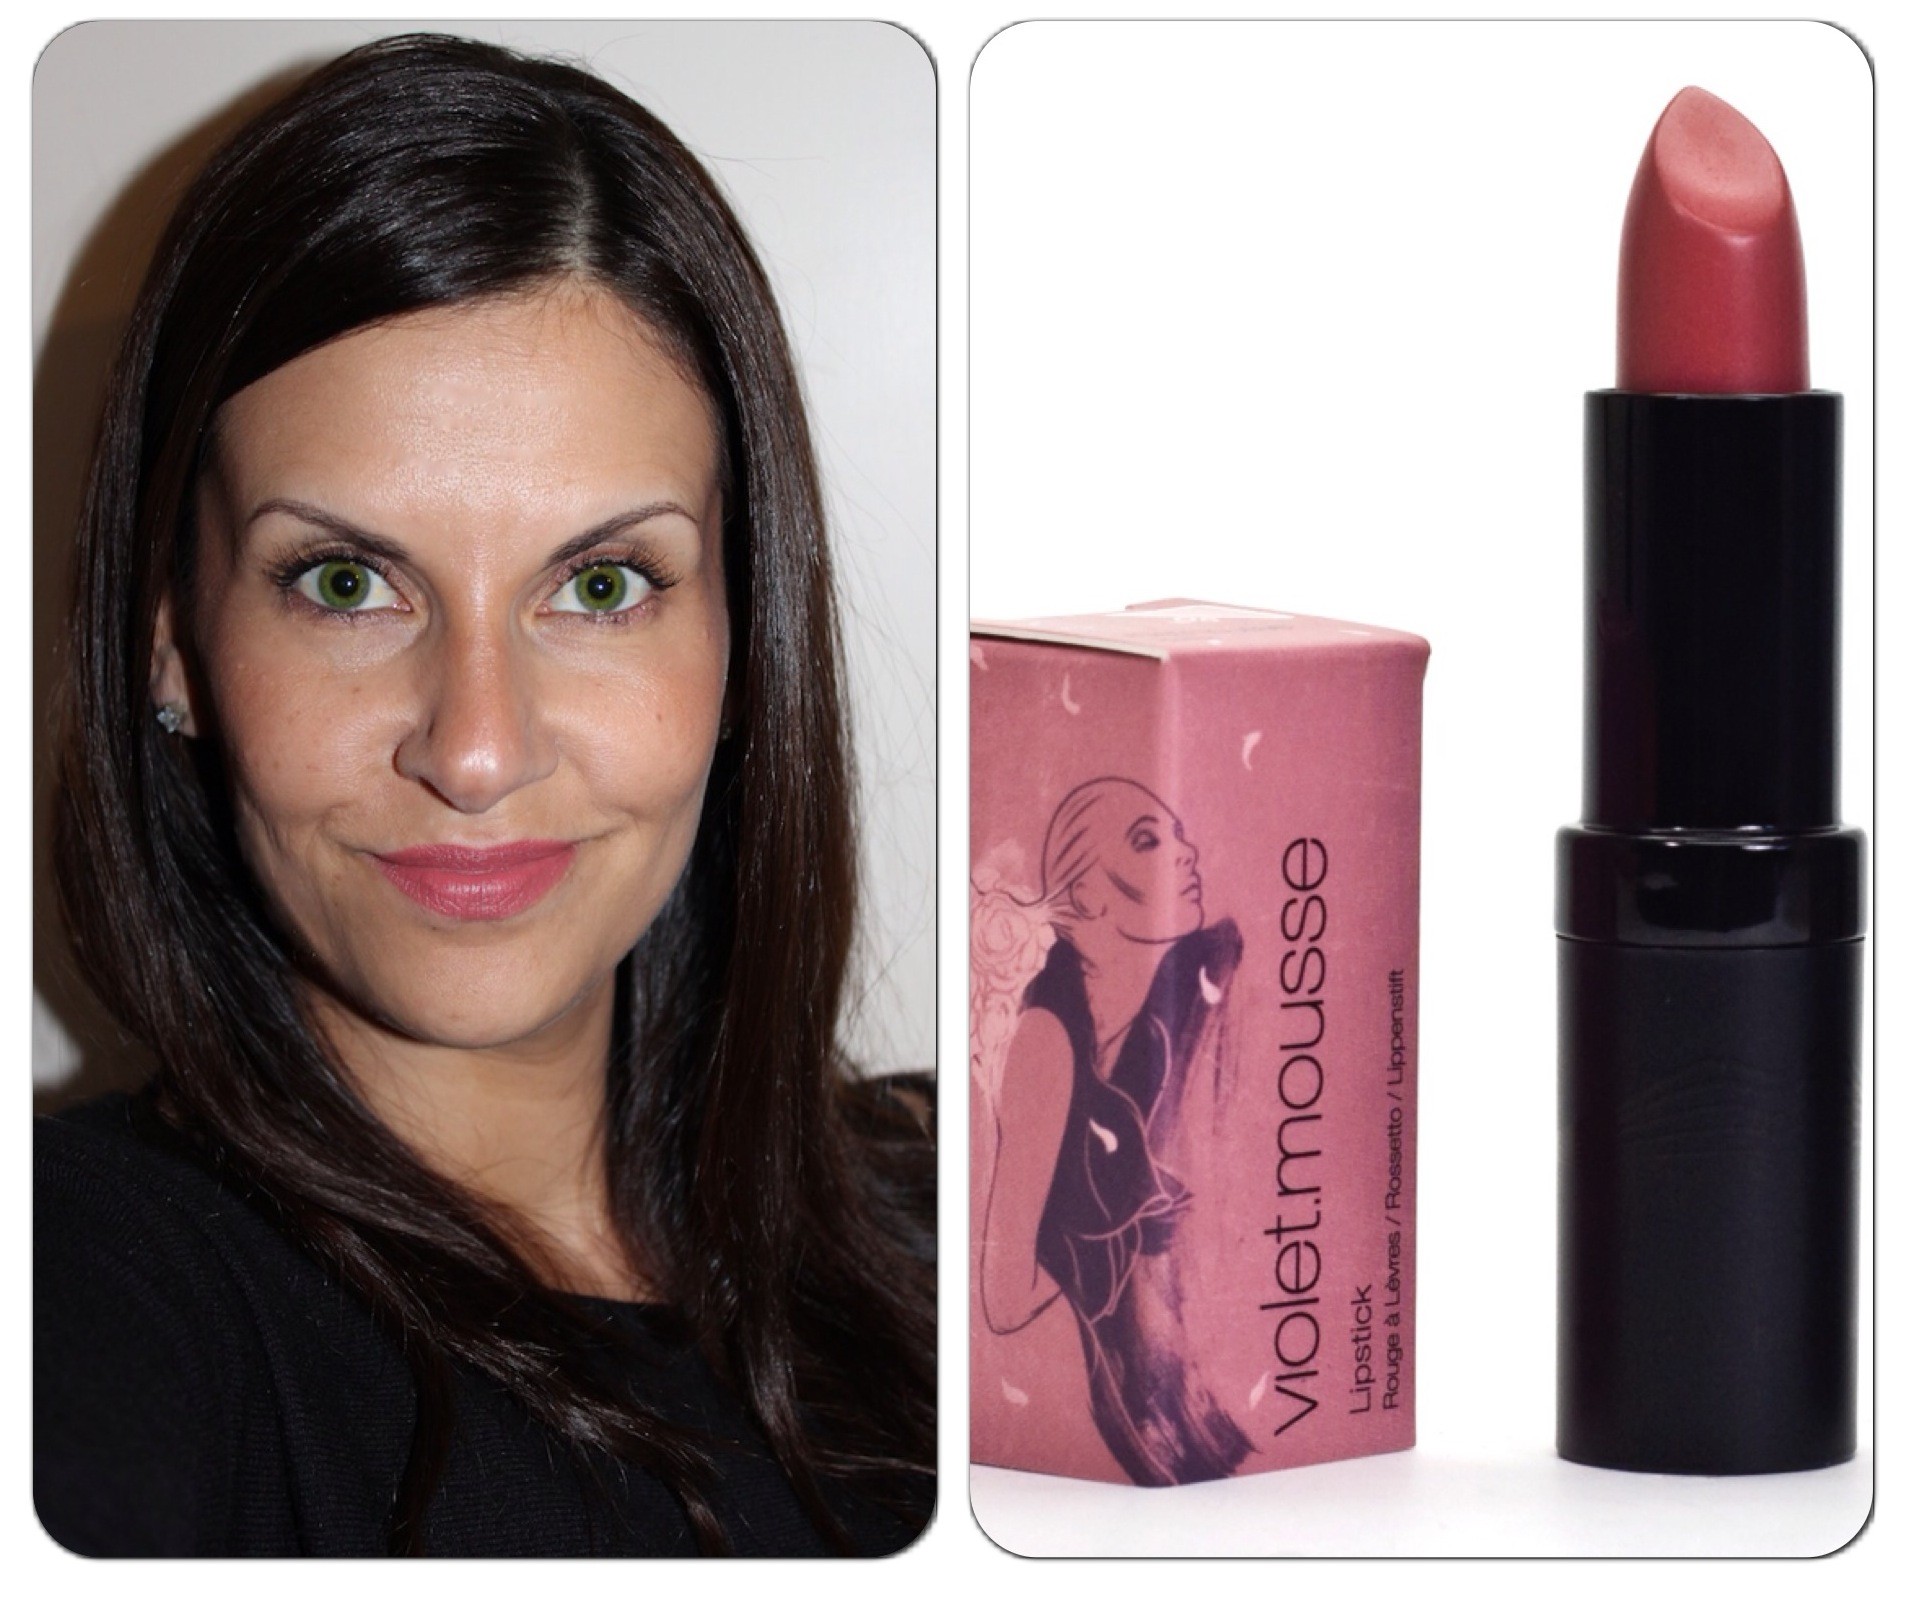 karen murrell lipstick, beauty blog nz, style blog nz, PR NZ, beauty media nz, Bare PR, beauty, makeup, cosmetics